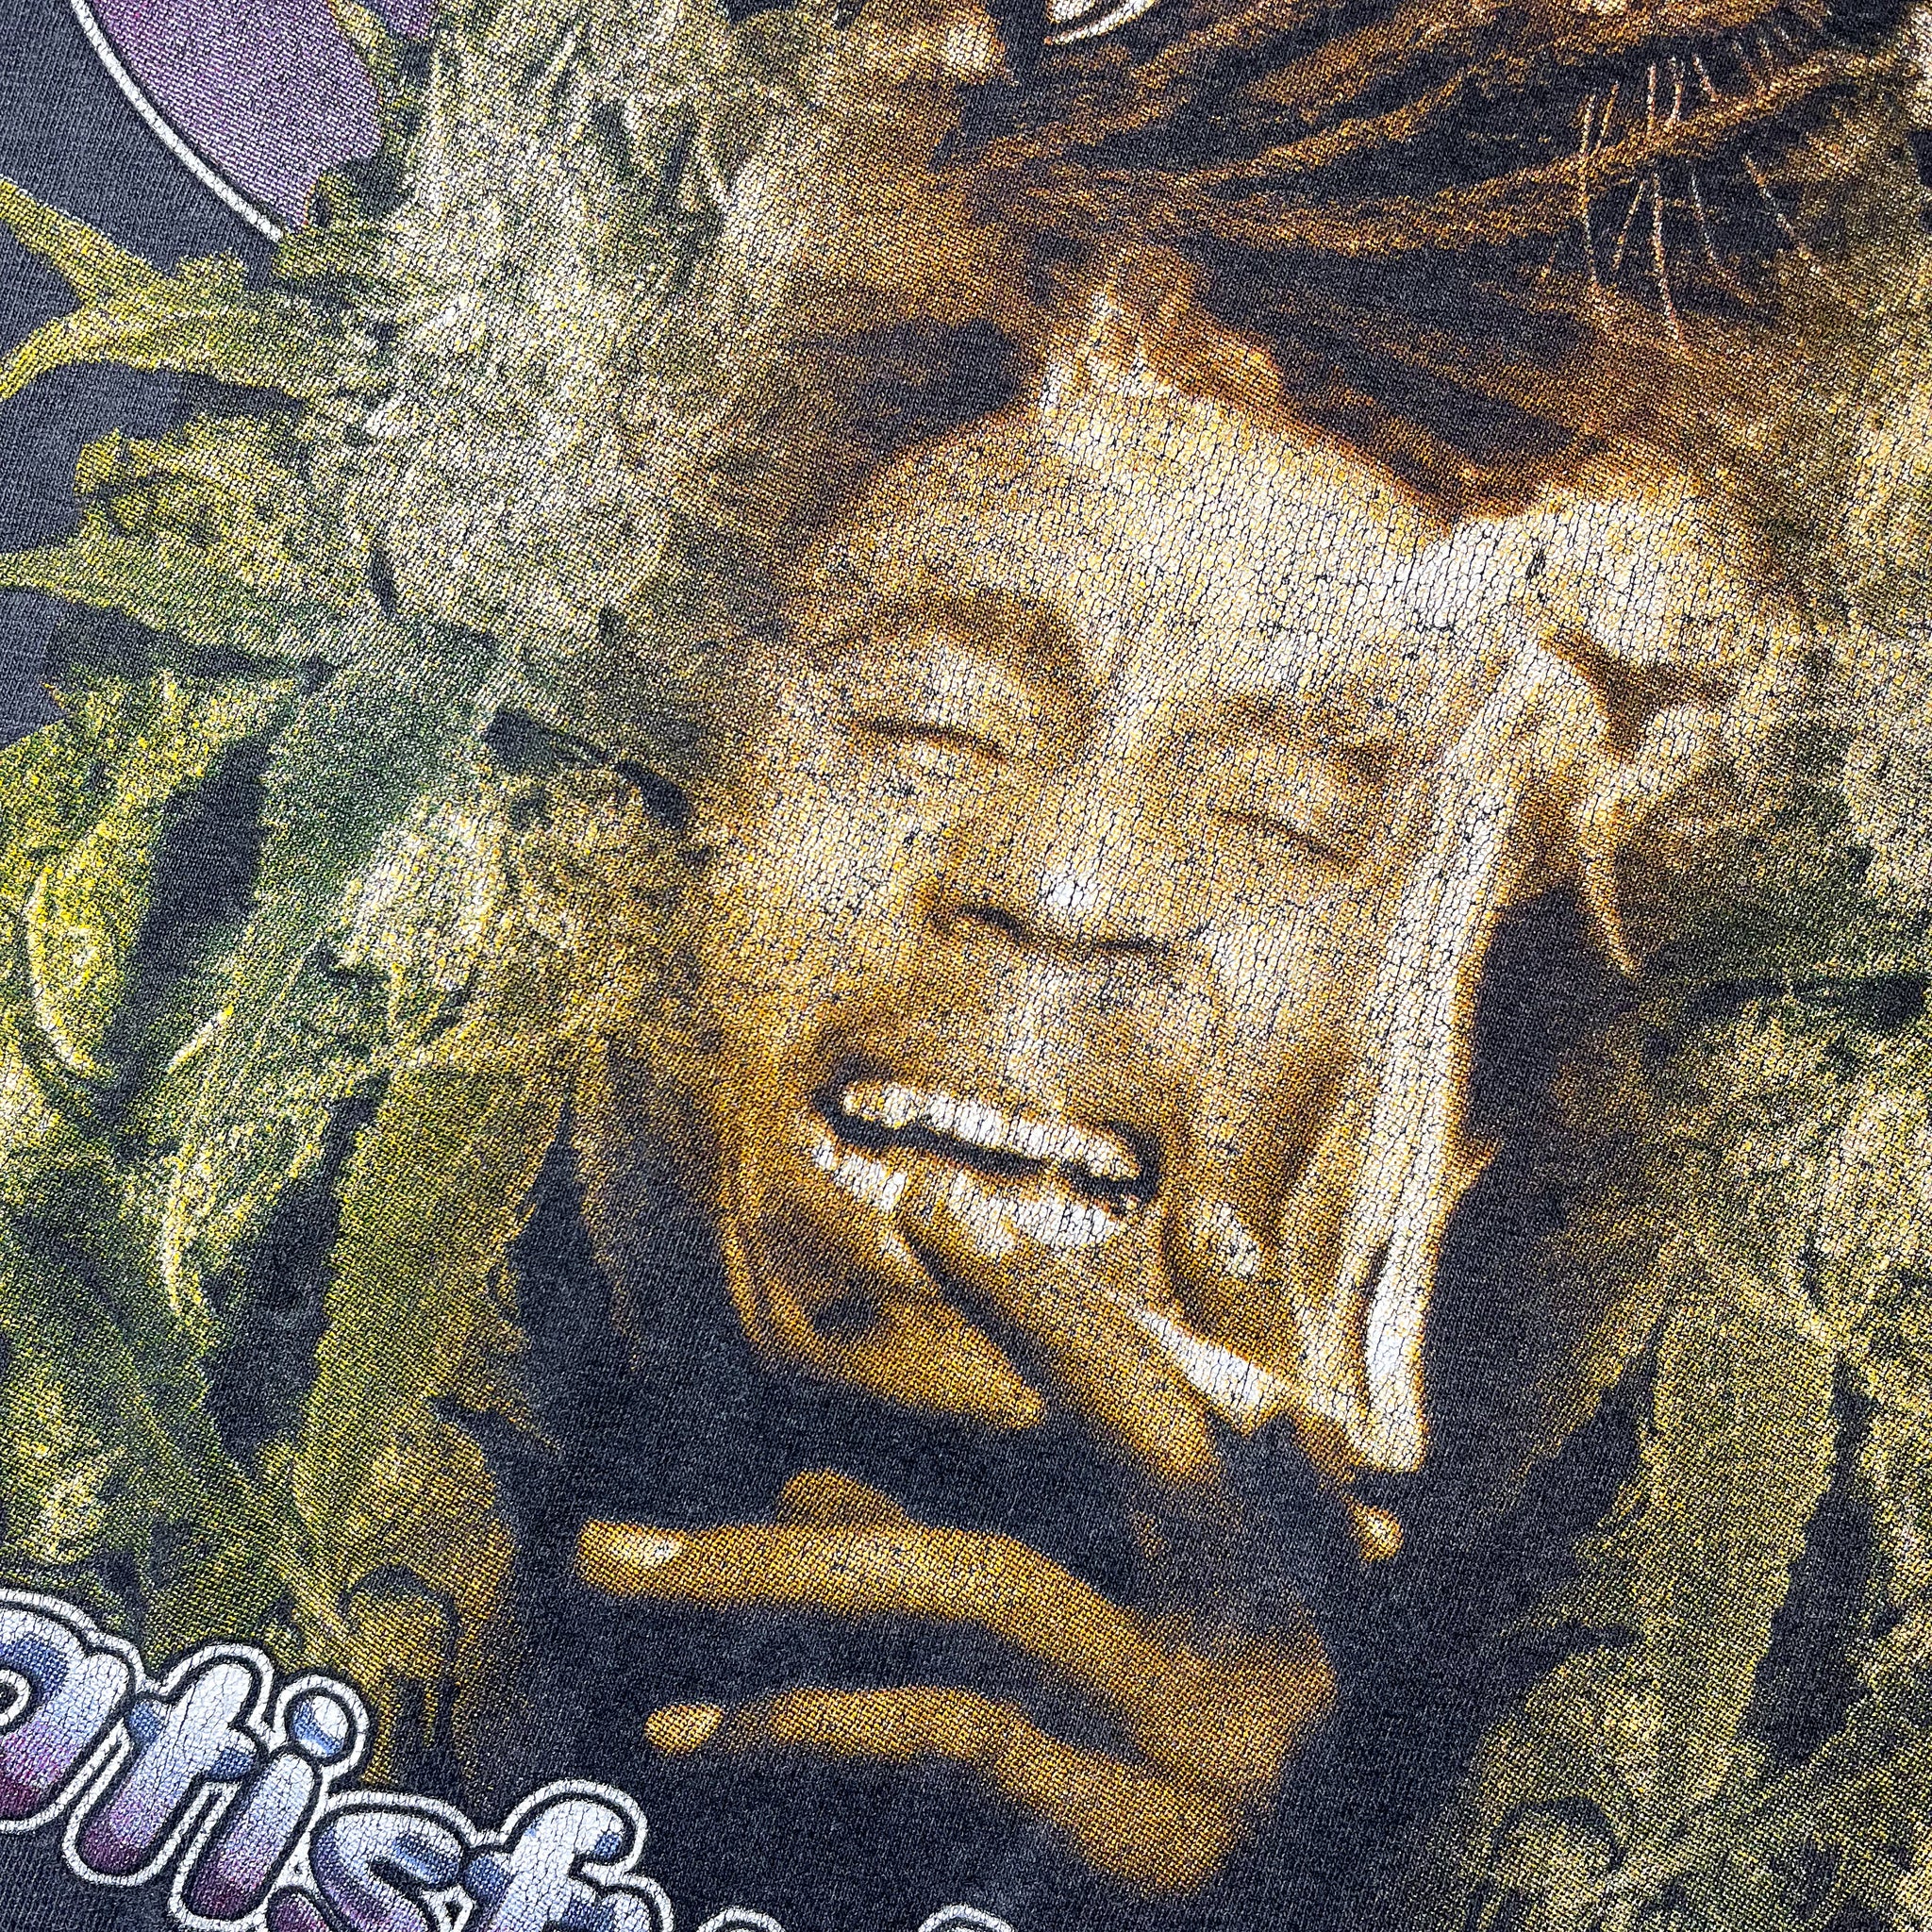 Bob Marley Vintage Bootleg Rap Tee “Satisfy My Soul”